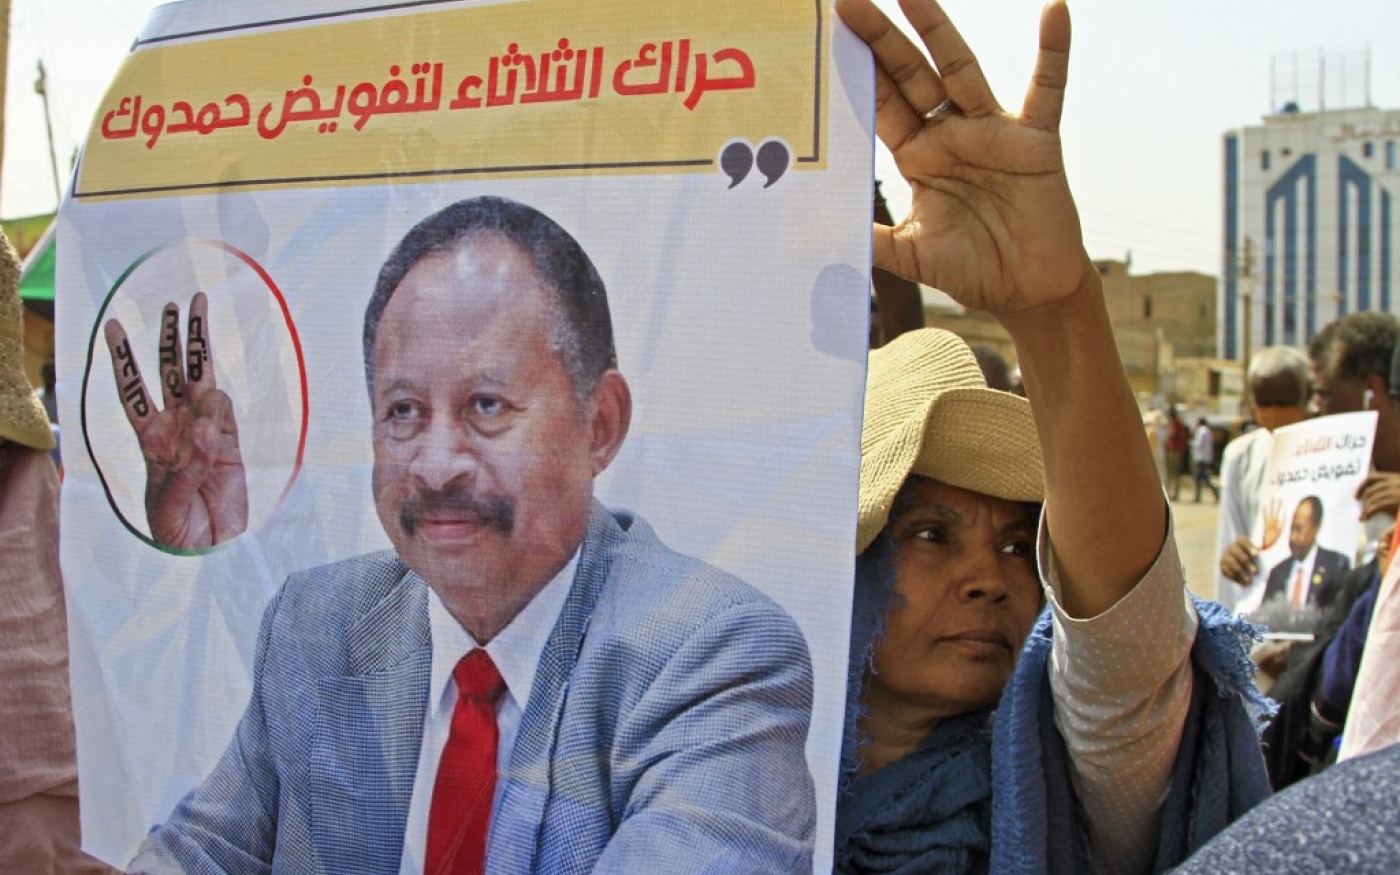 Des manifestants soudanais brandissent des pancartes soutenant le retour d’Abdallah Hamdok, Premier ministre évincé par le coup d’État d’octobre, lors d’une manifestation contre le putsch, en juillet 2022 (AFP)